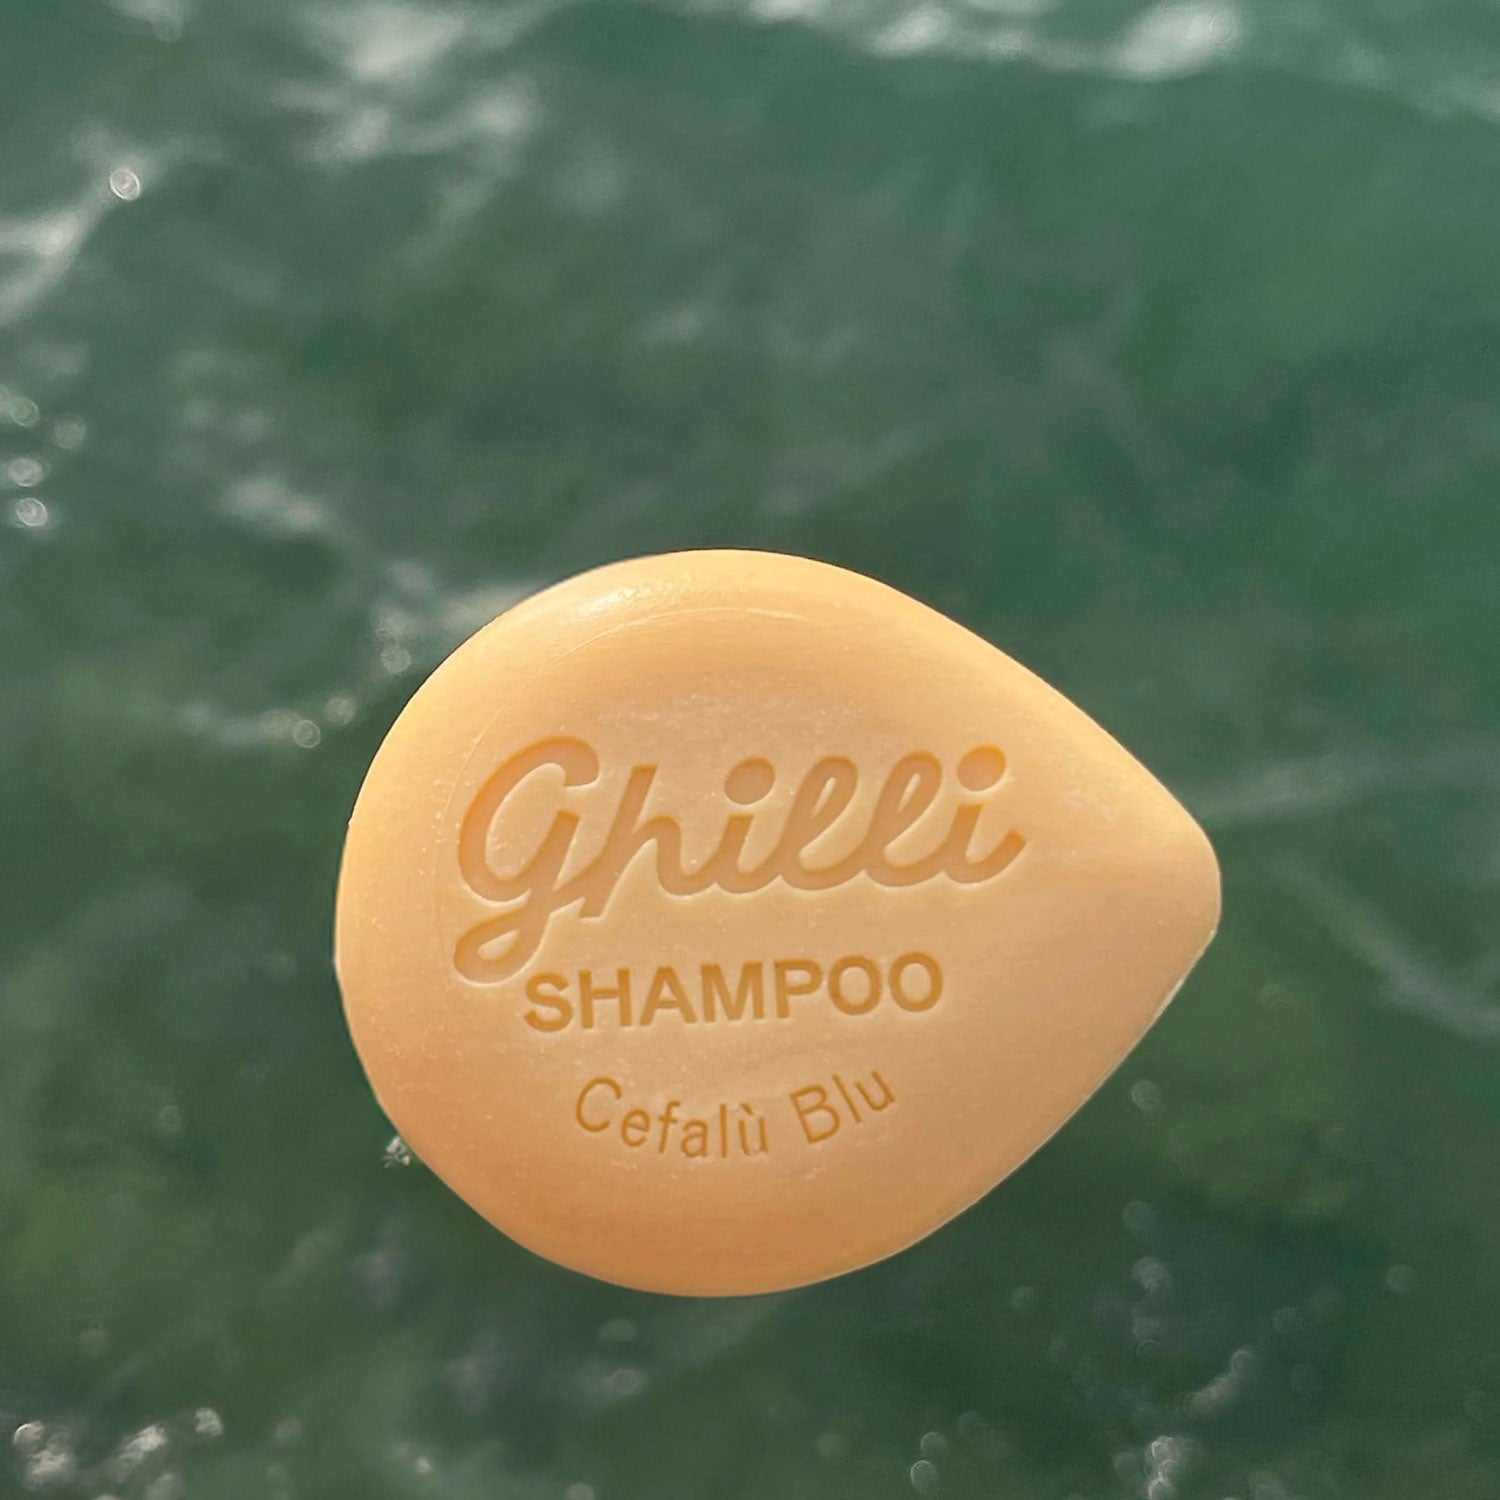 Shampoo Bar Cefalù Blu - Ghilli